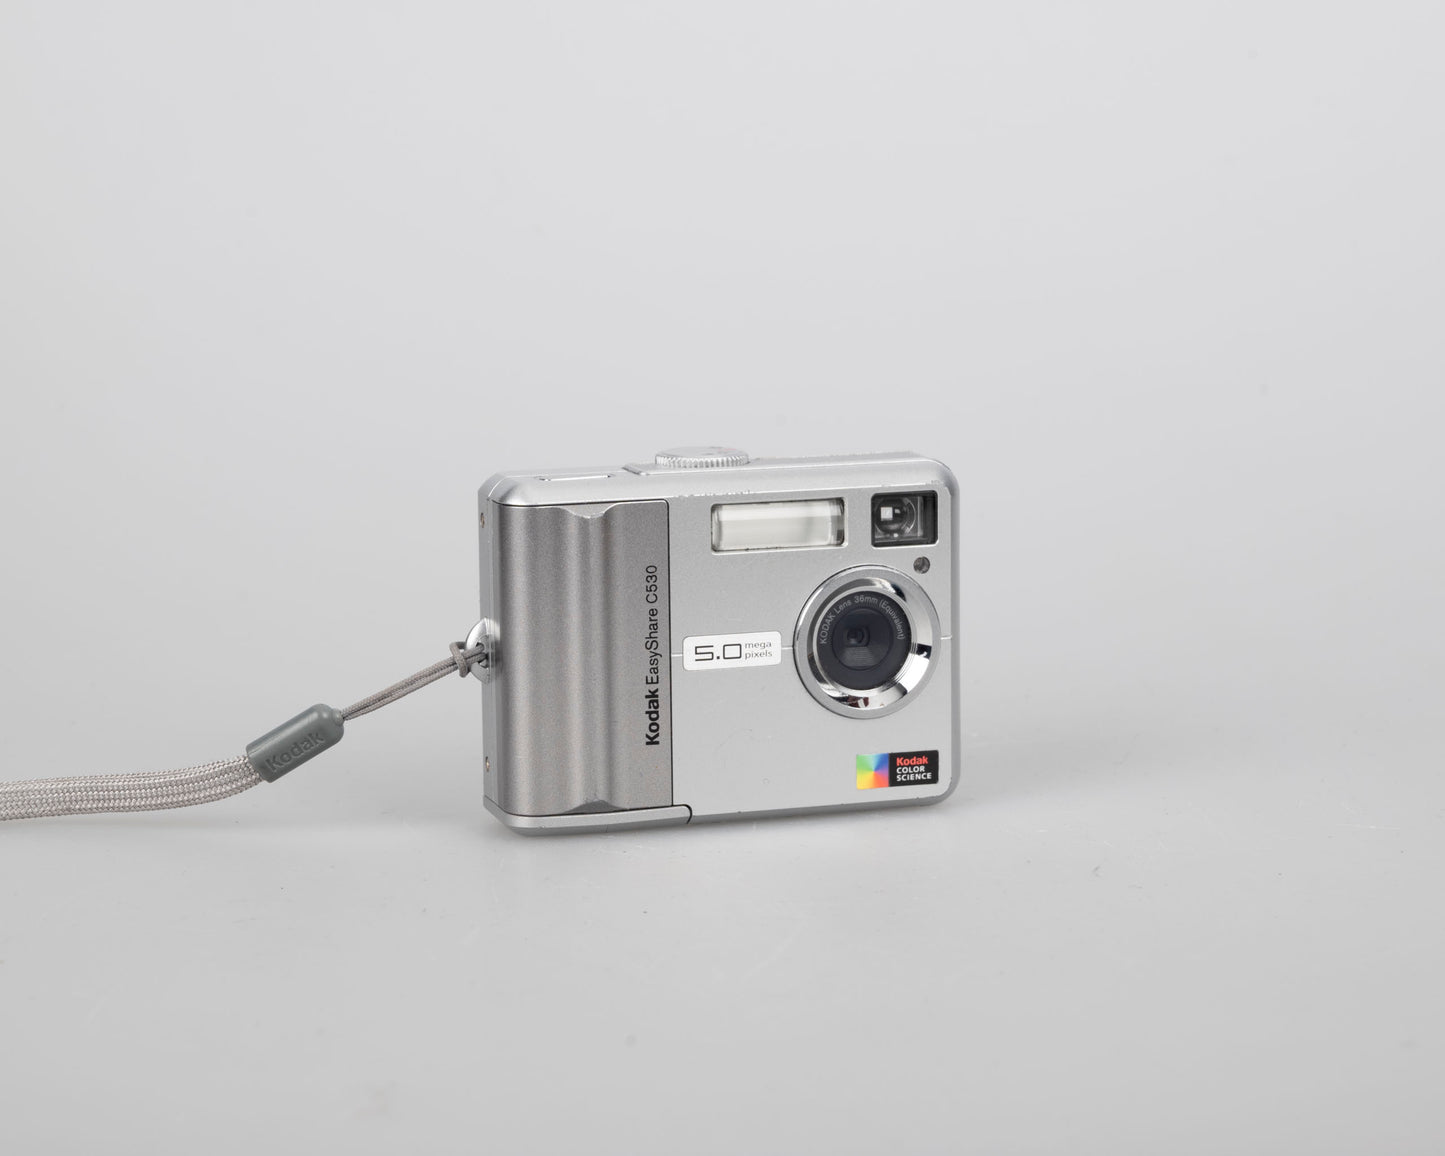 Appareil photo numérique à capteur CCD Kodak EasyShare C530 de 5 mégapixels avec carte SD de 256 Mo (utilise des piles AA)